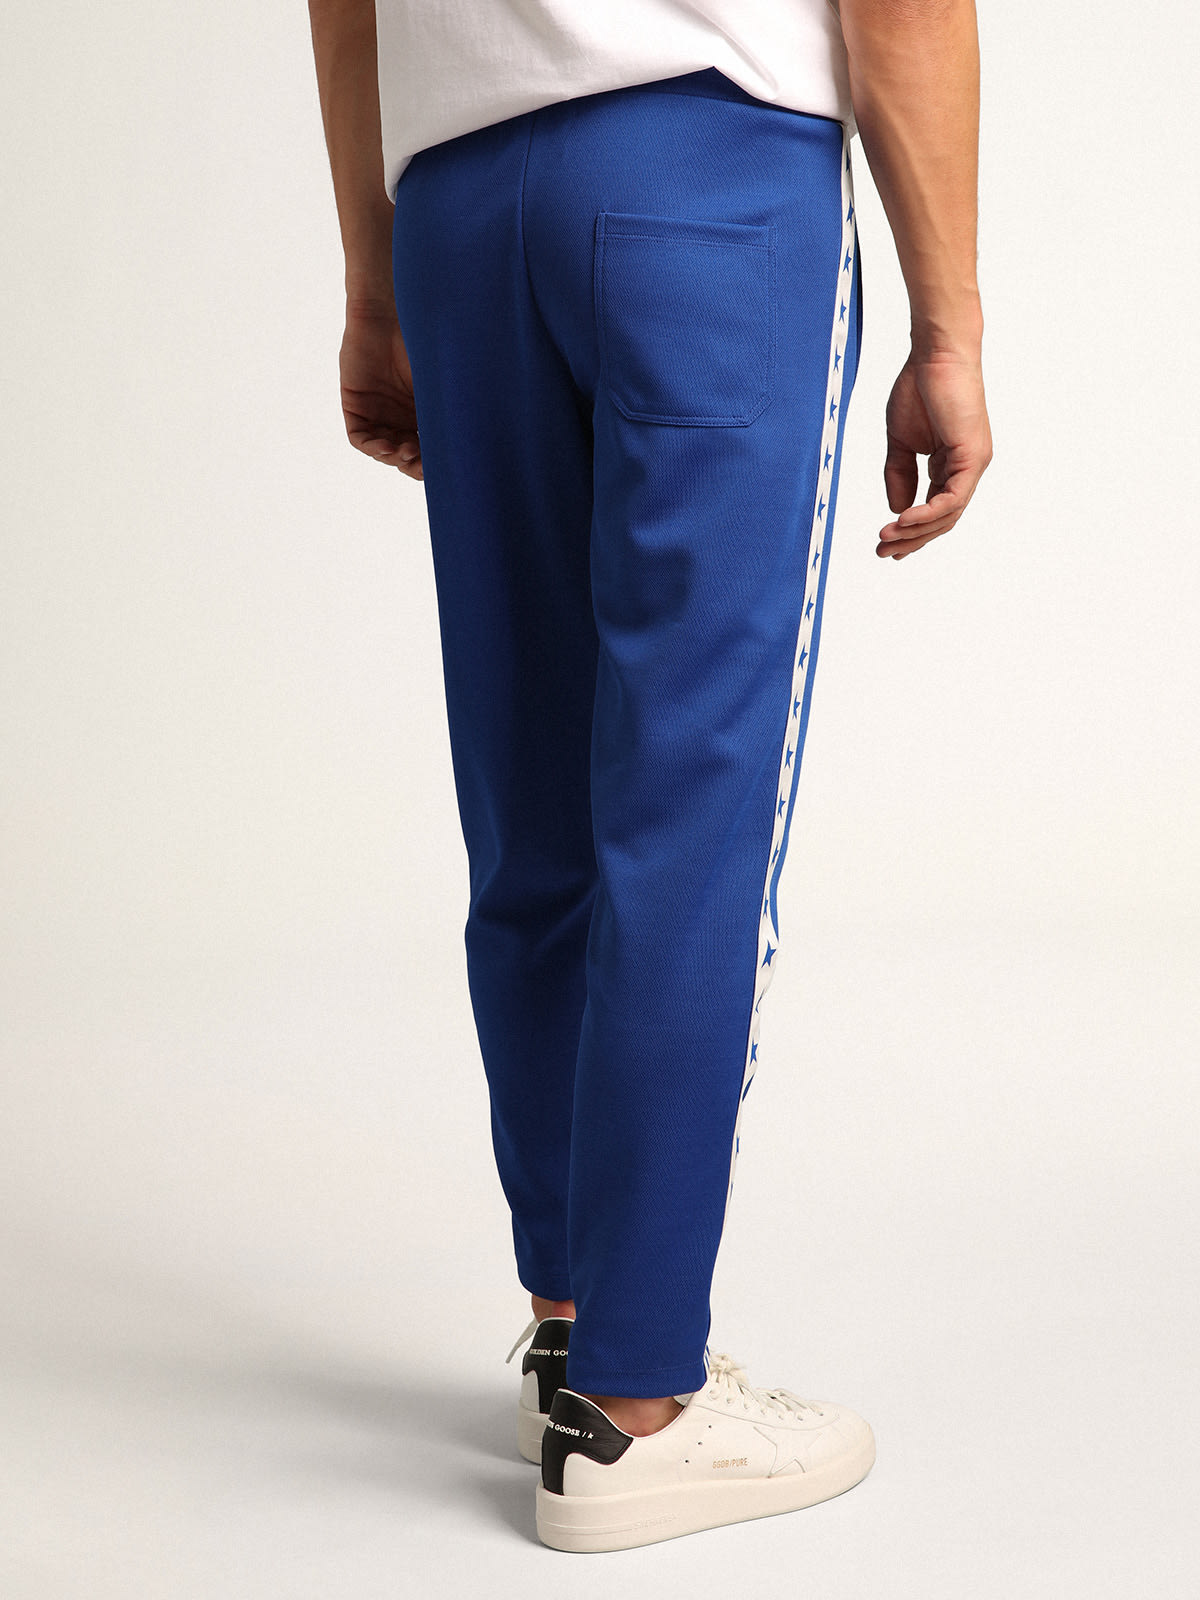 Golden Goose - Pantalon de jogging Doro collection Star de couleur bleuet avec bande blanche et étoiles bleuet sur les côtés in 